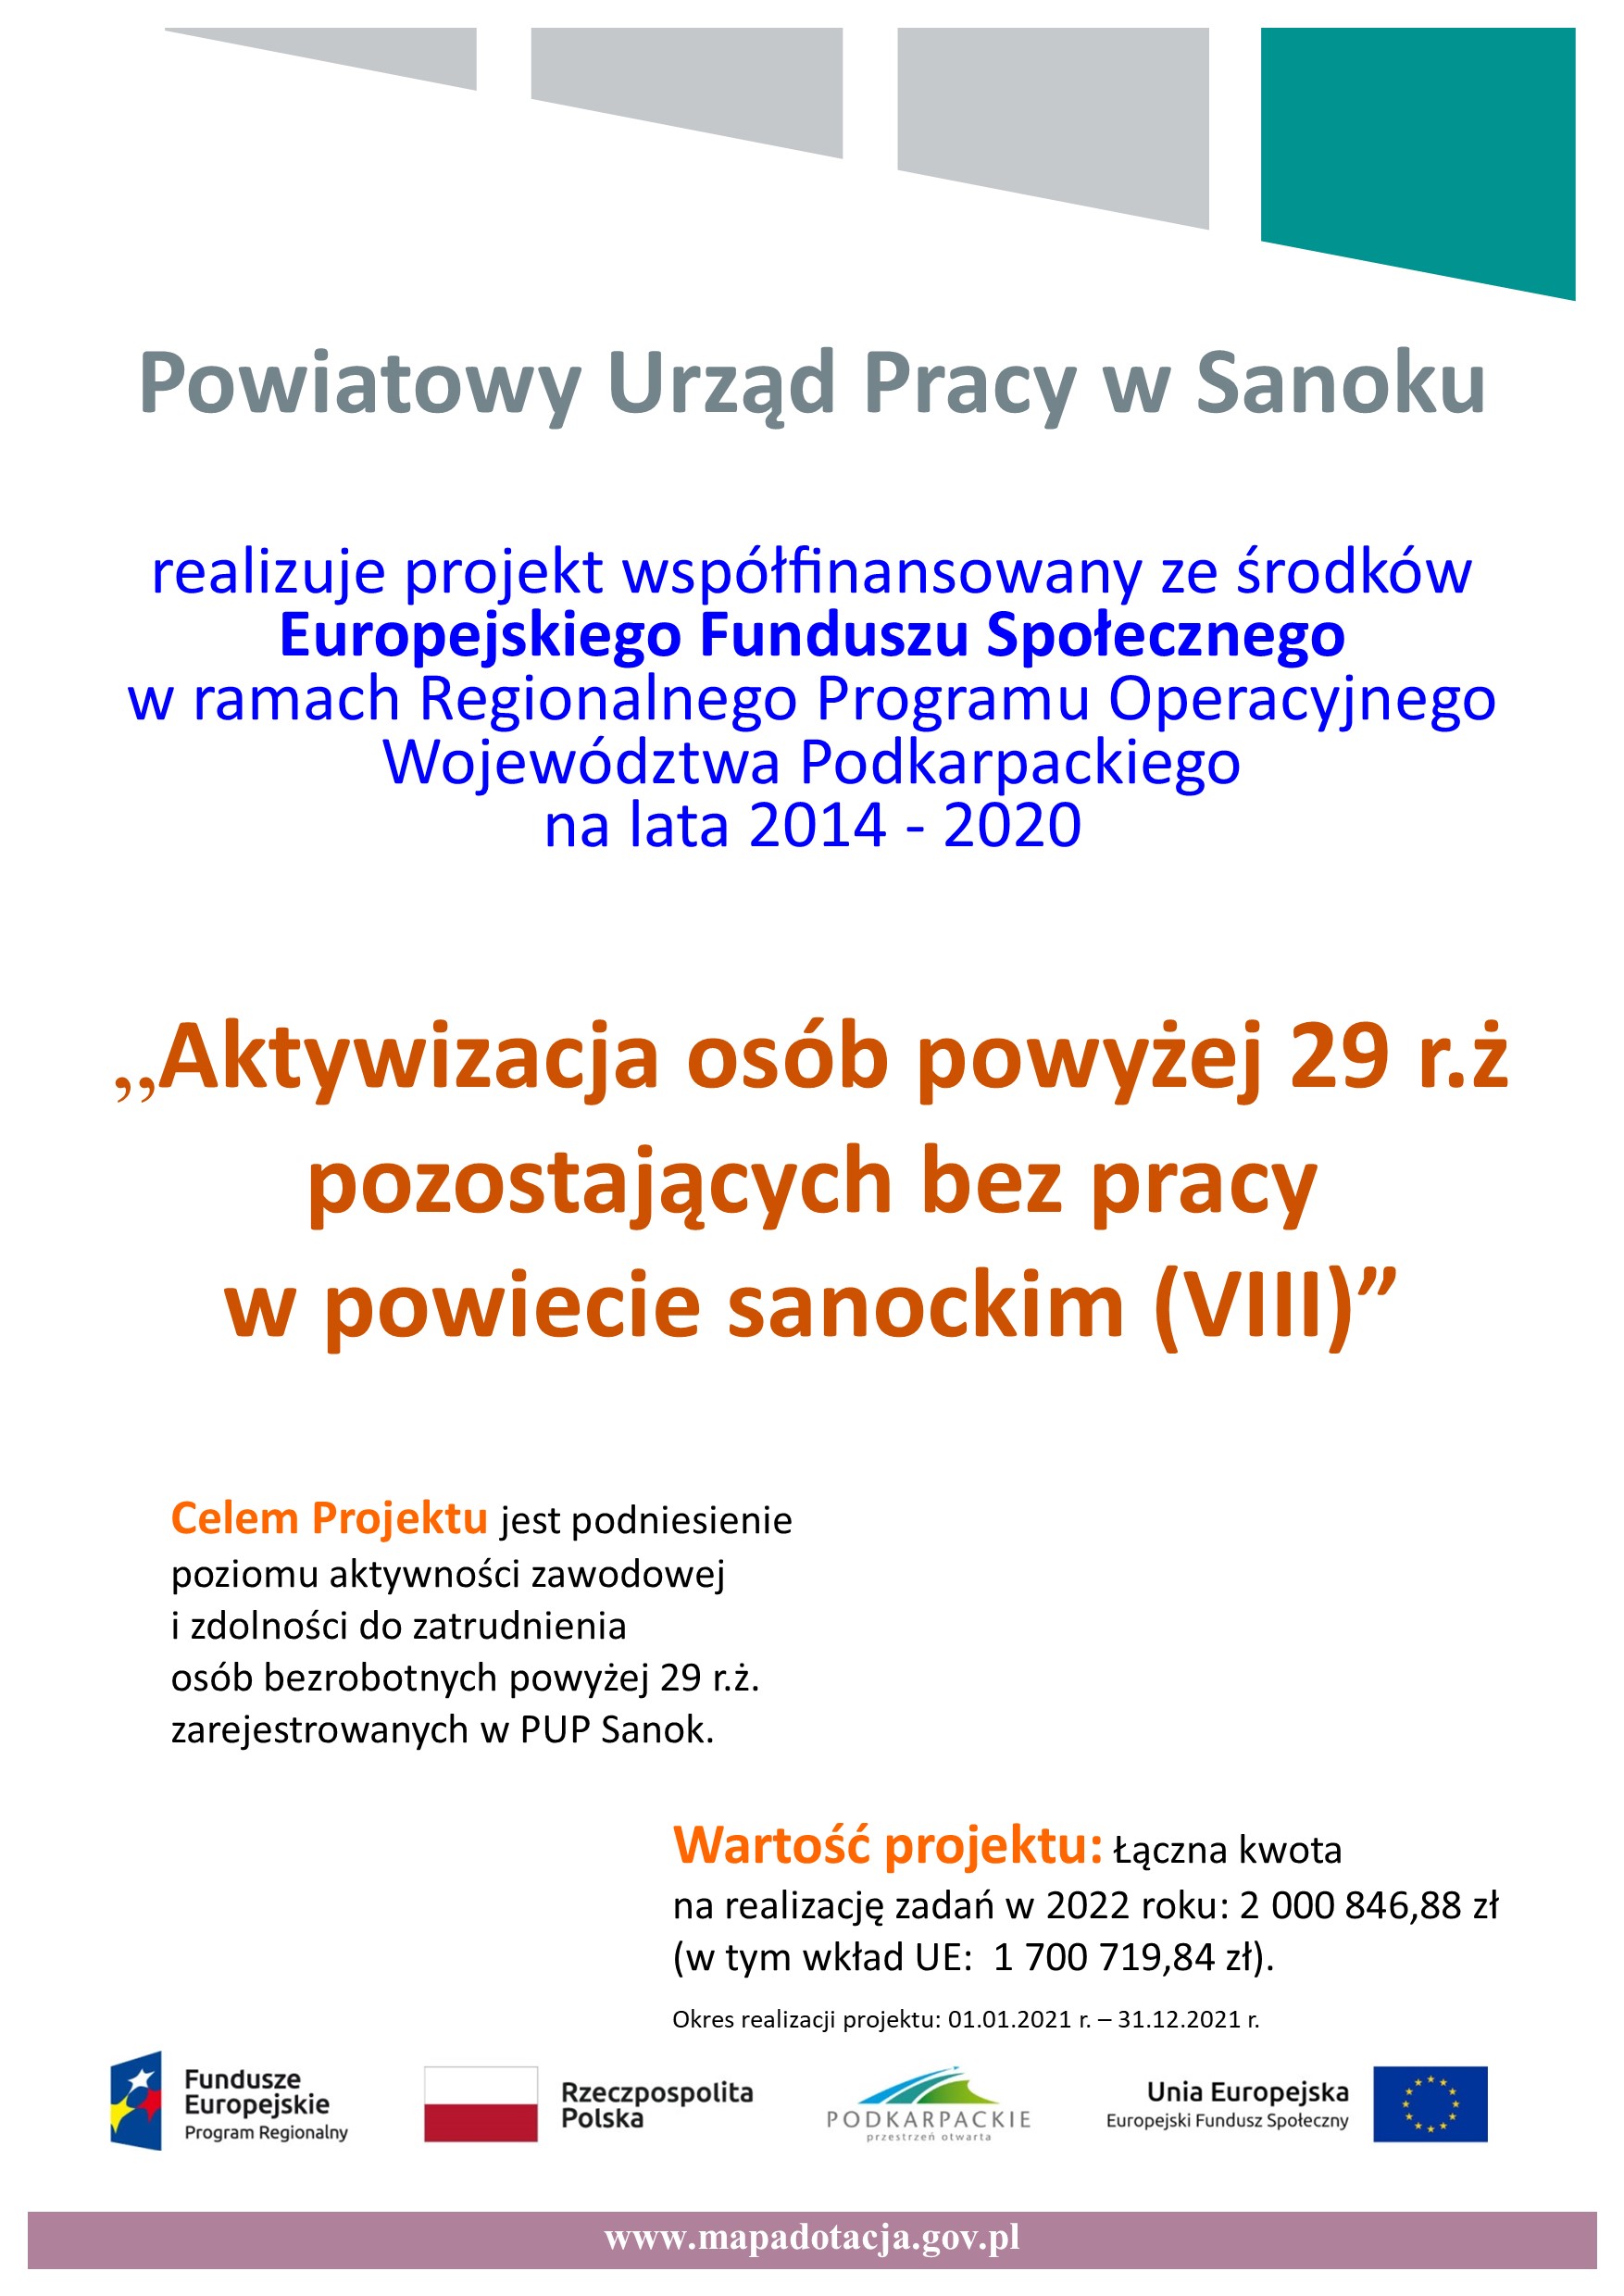 Plakat przedstawia projekt Aktywizacja osób powyżej 29 r.ż. pozostających bez pracy w powiecie sanockim (IV)